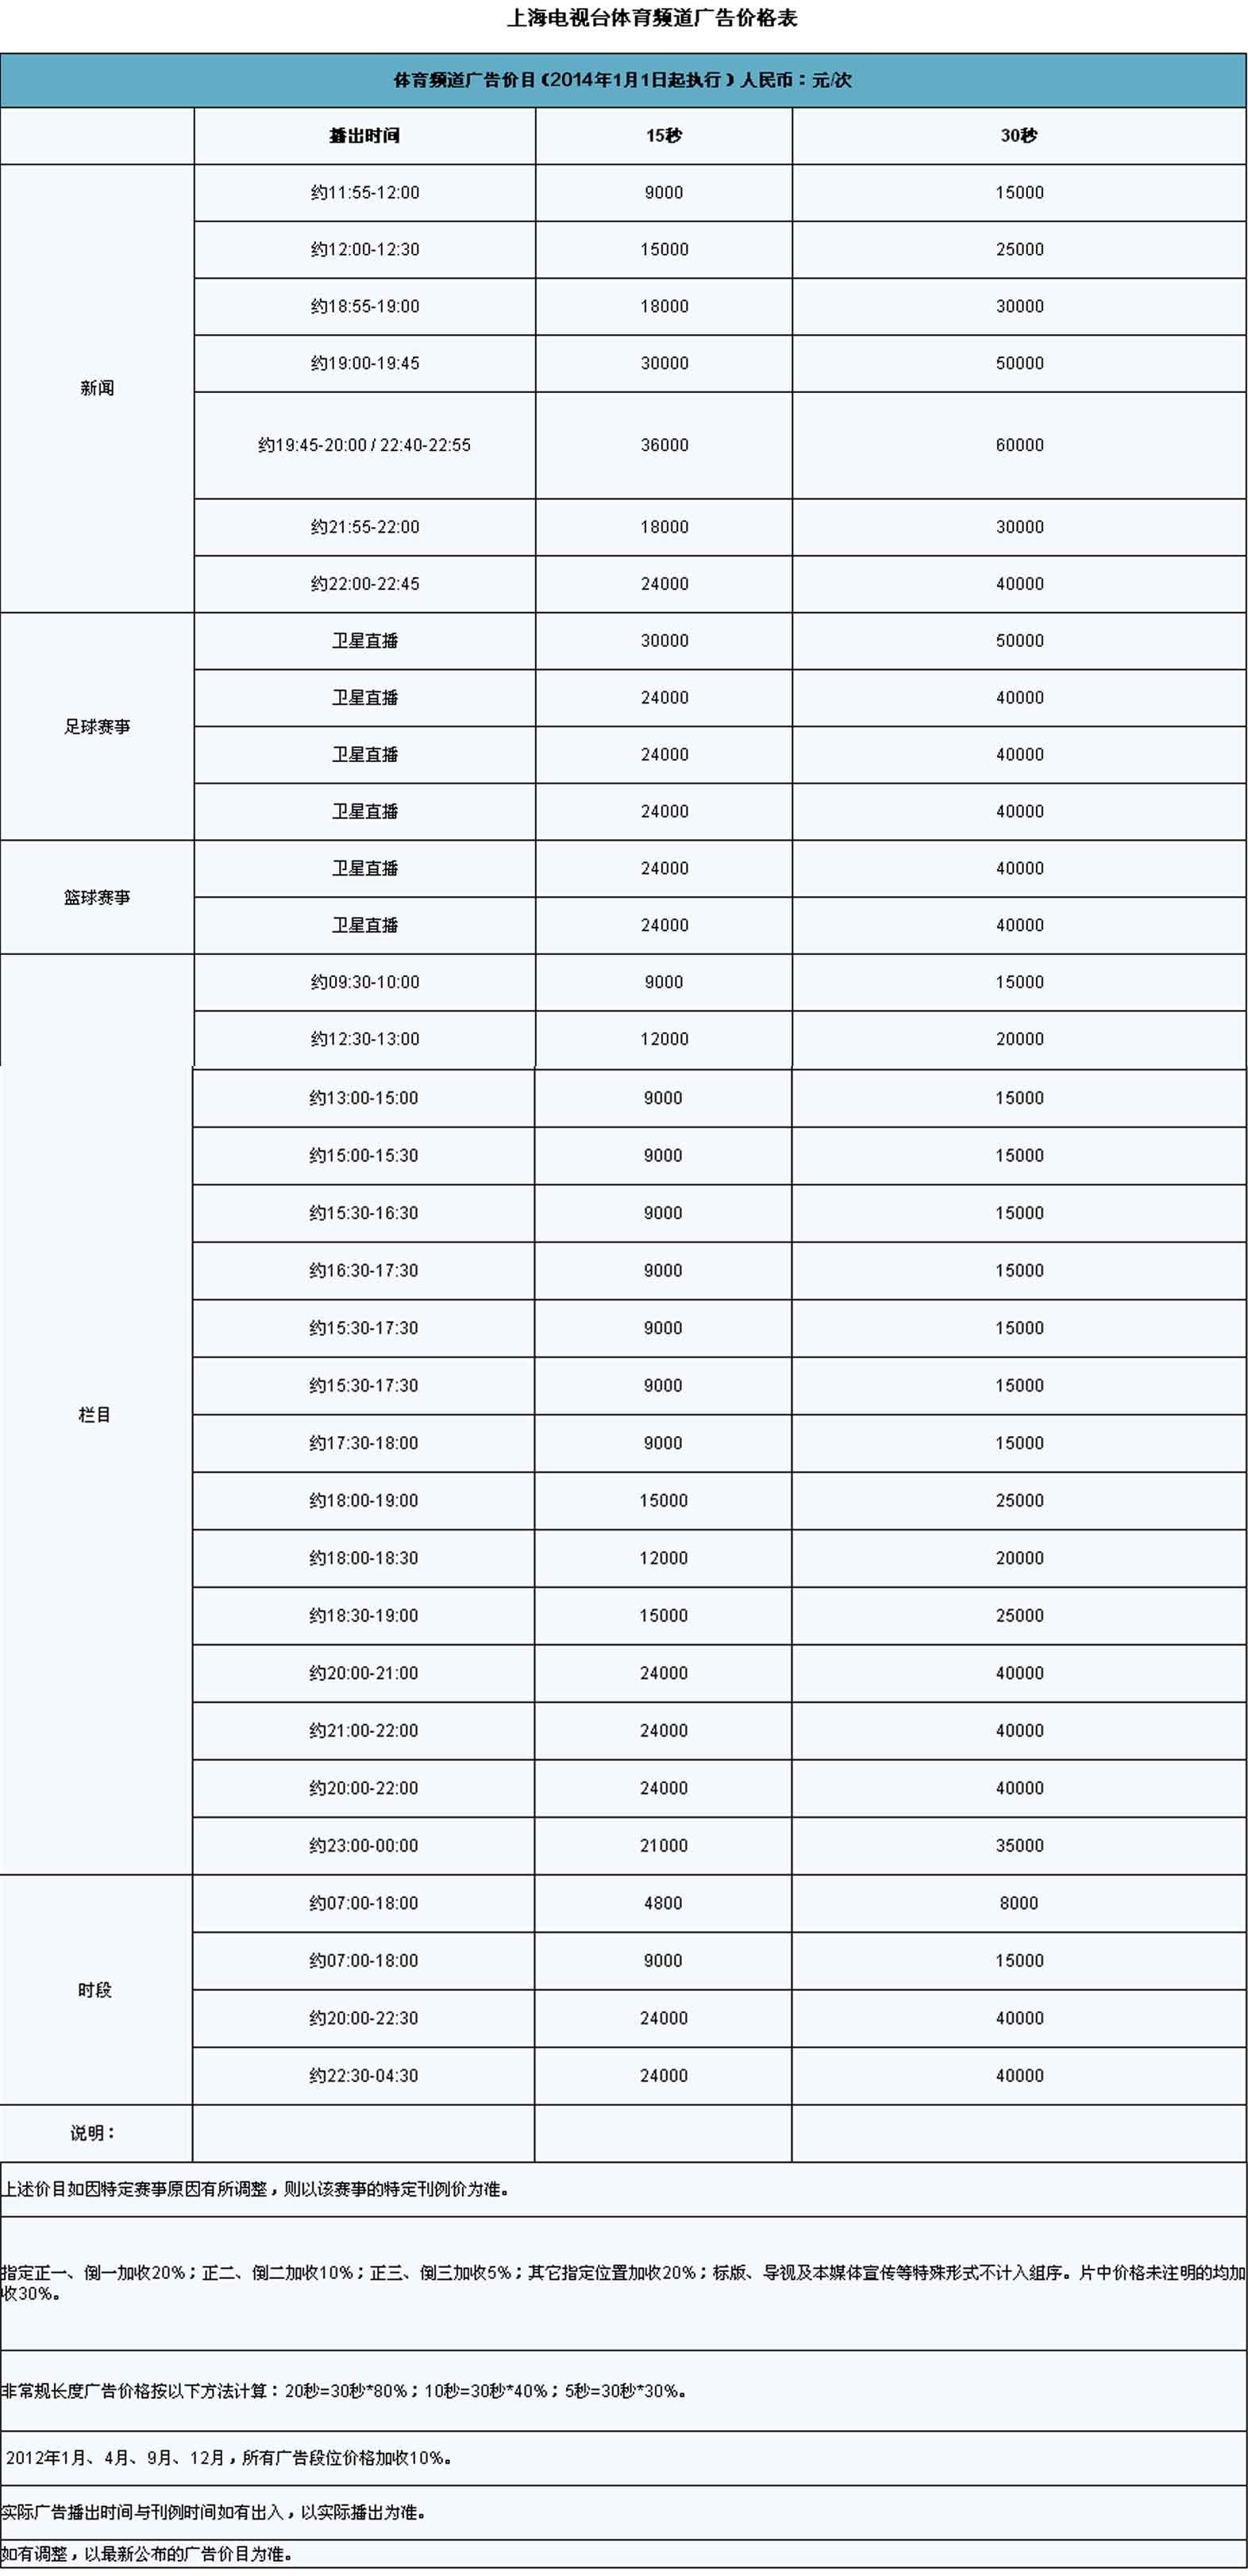 2015上海电视台体育频道广告价格表